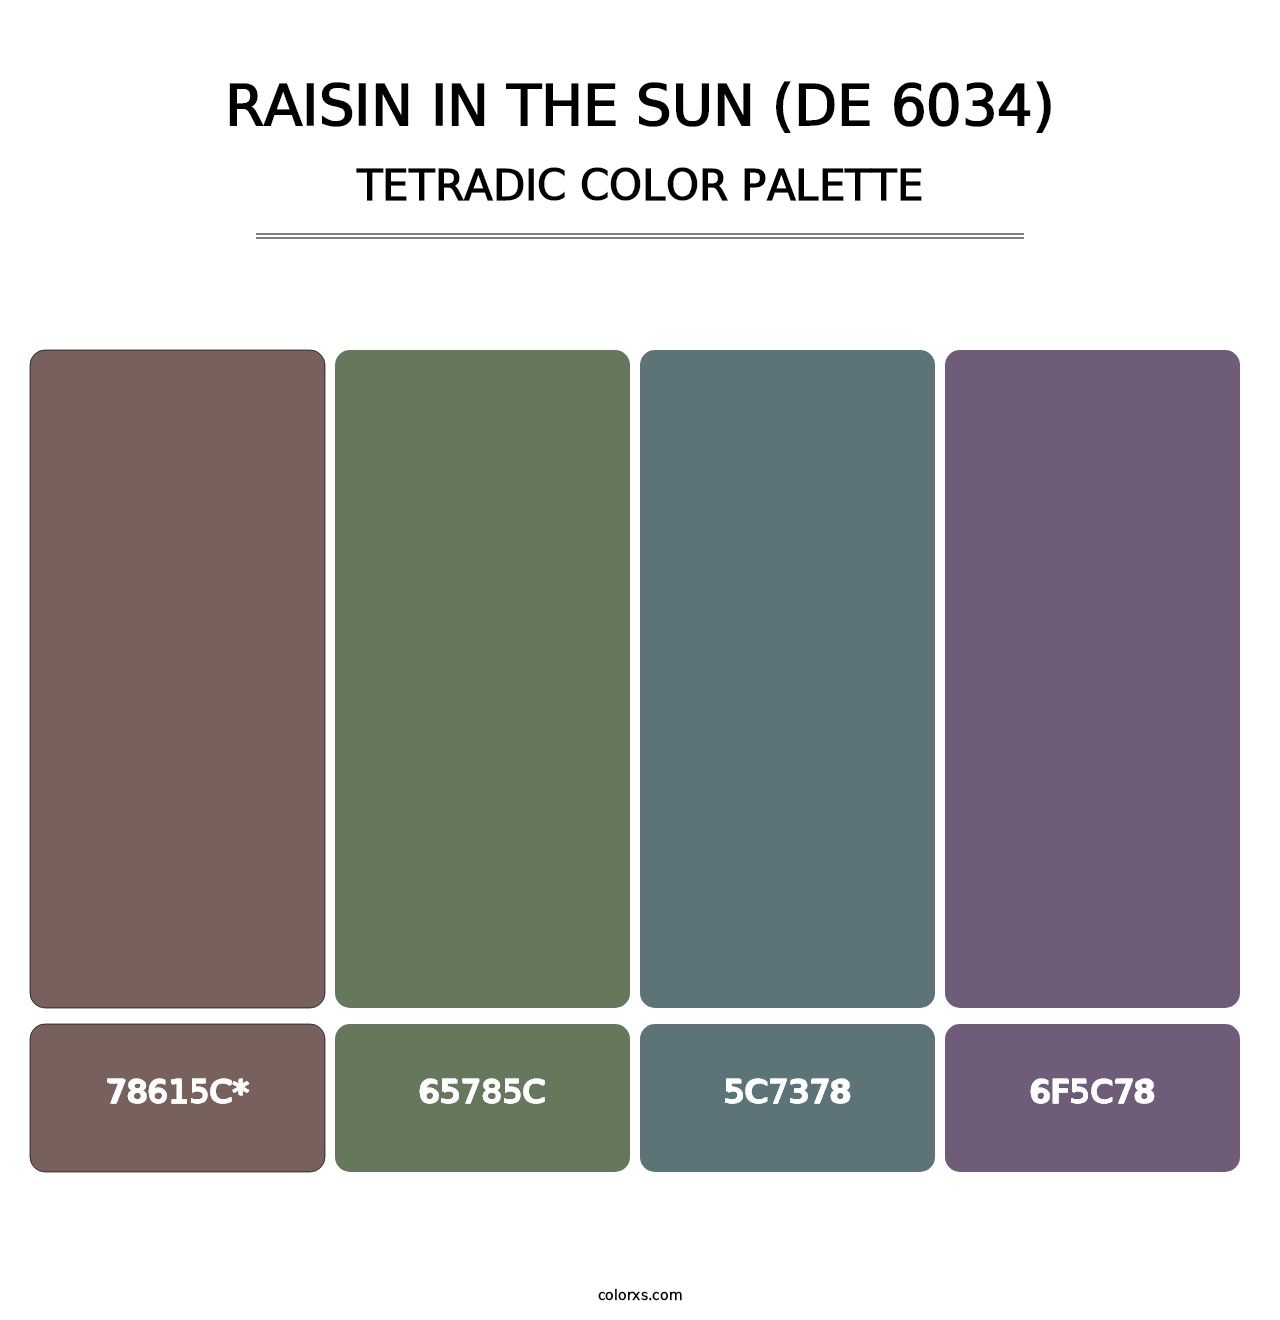 Raisin in the Sun (DE 6034) - Tetradic Color Palette